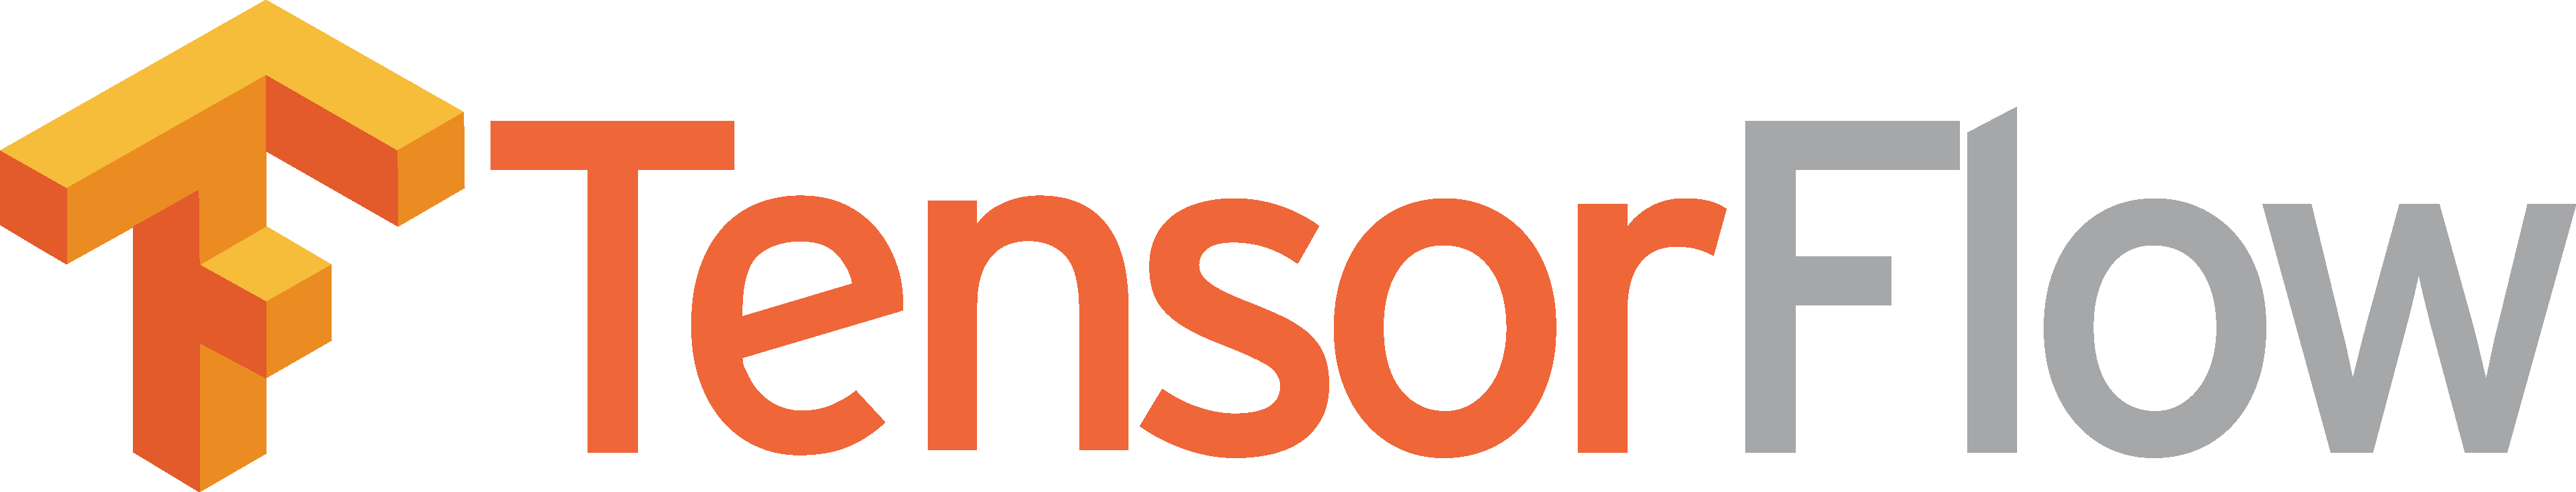 Tensorflow Logo png